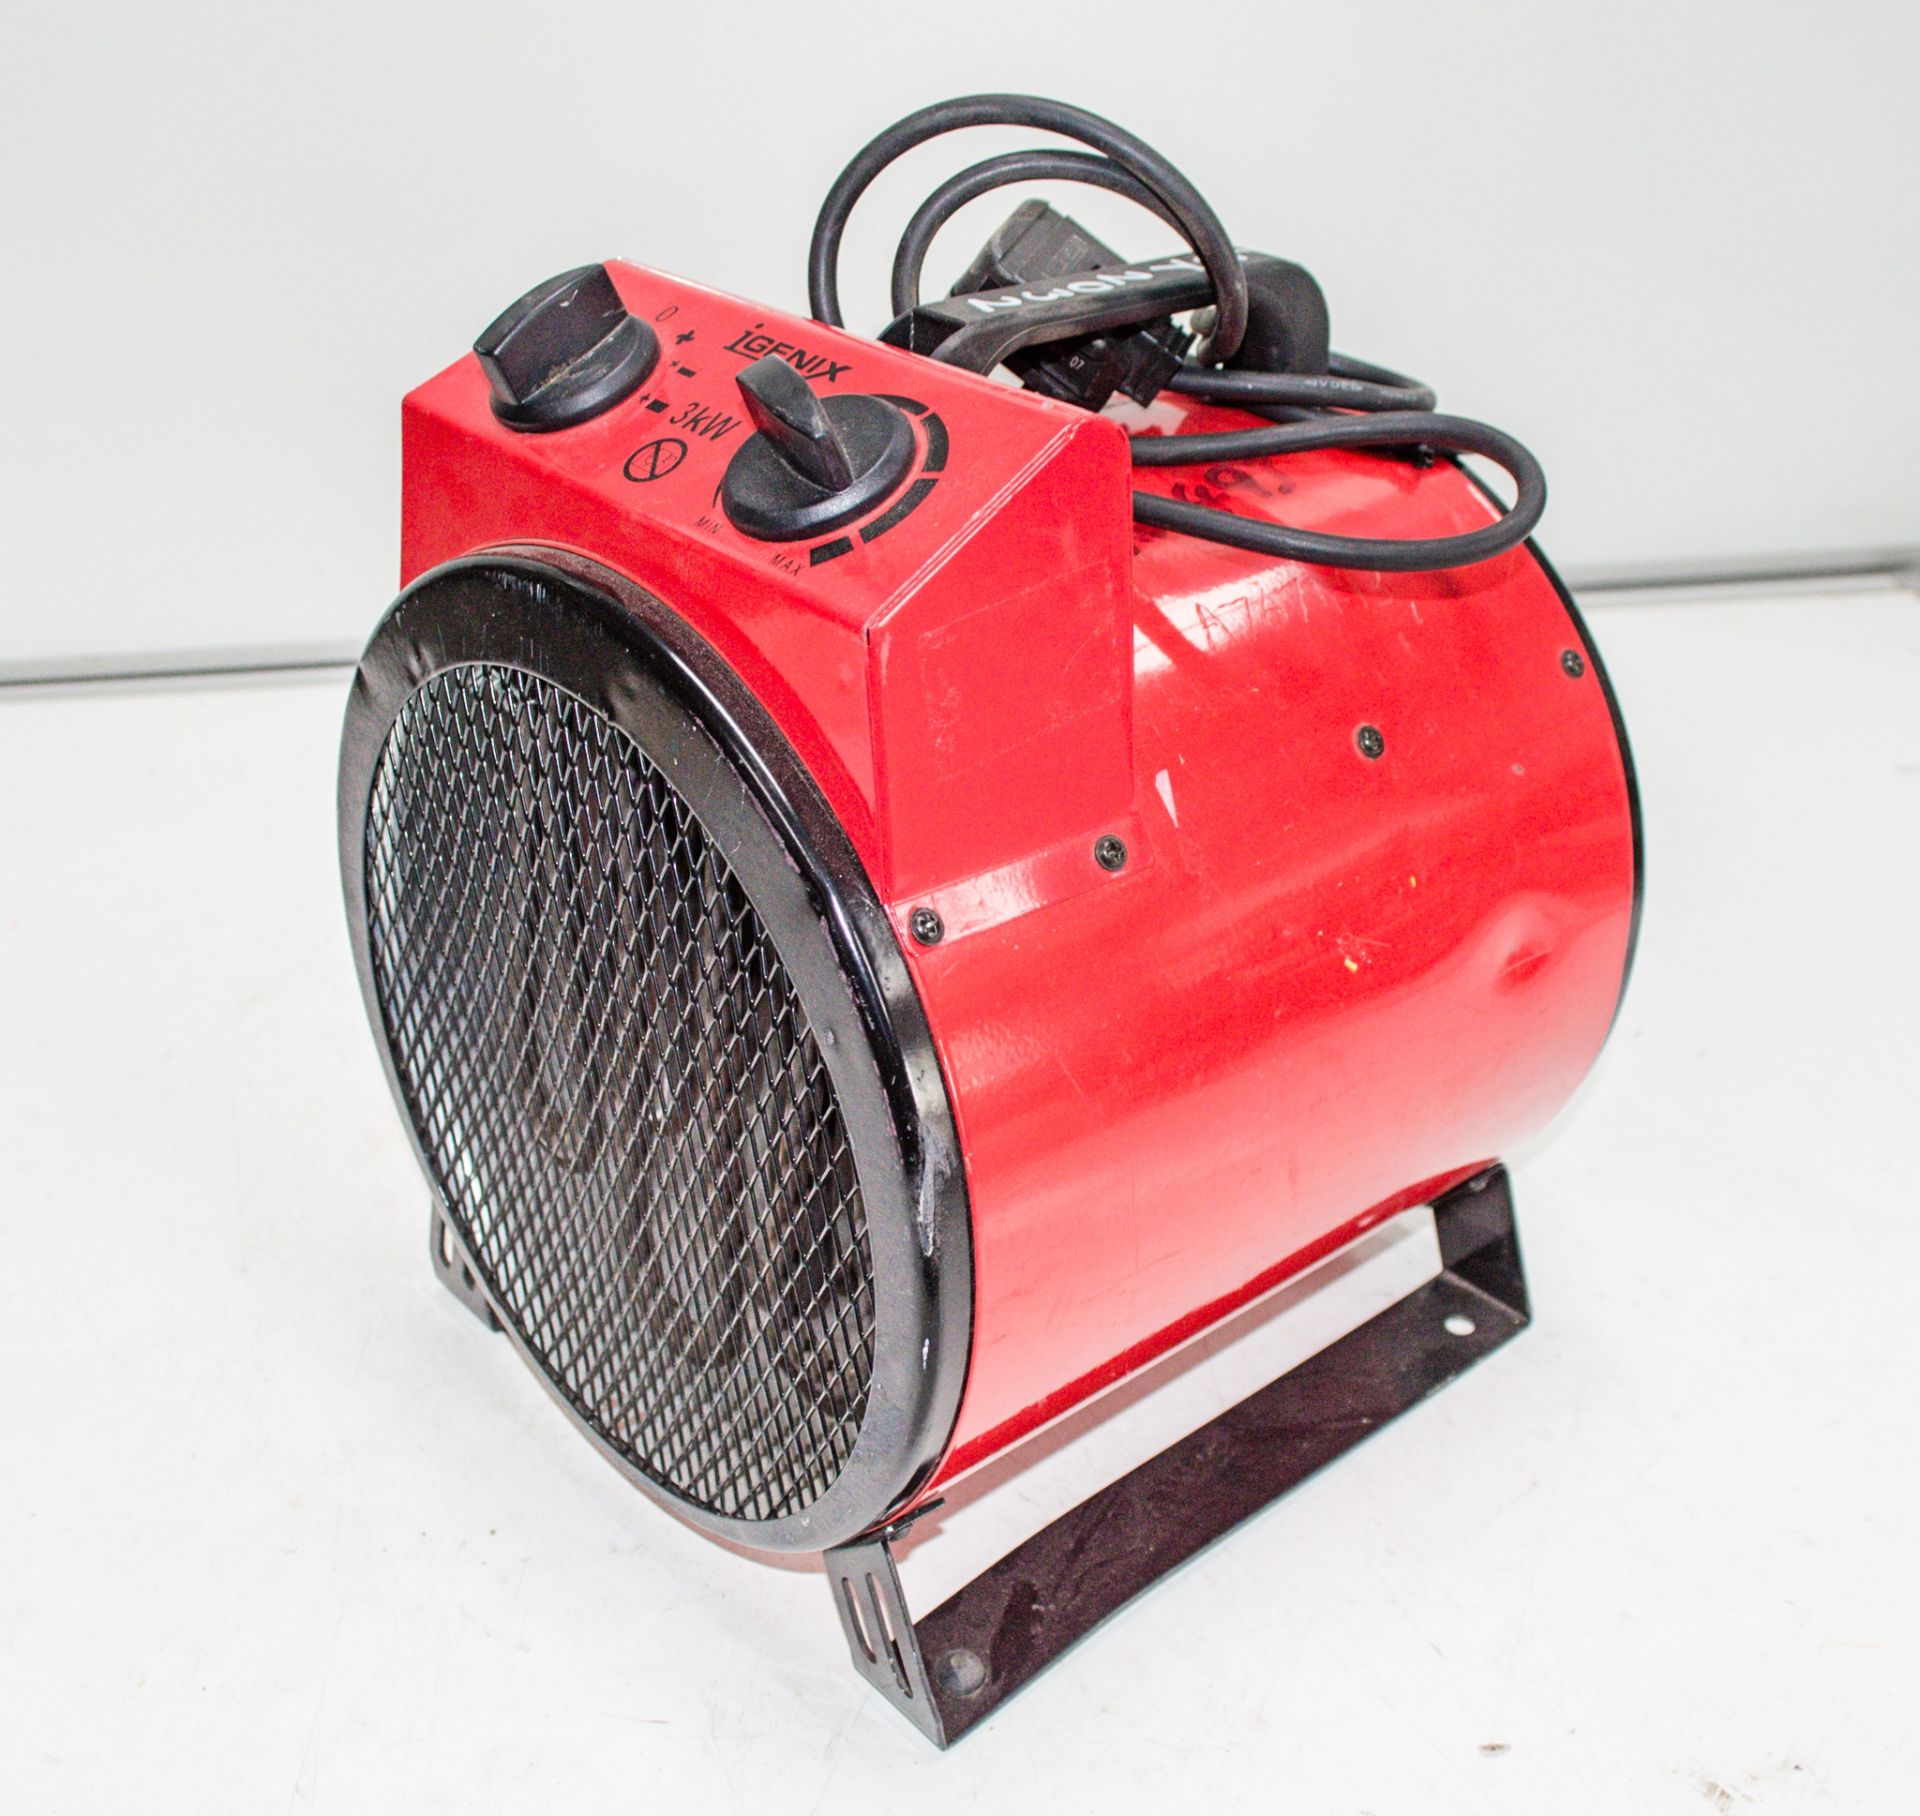 iGenix 240v heater A767493